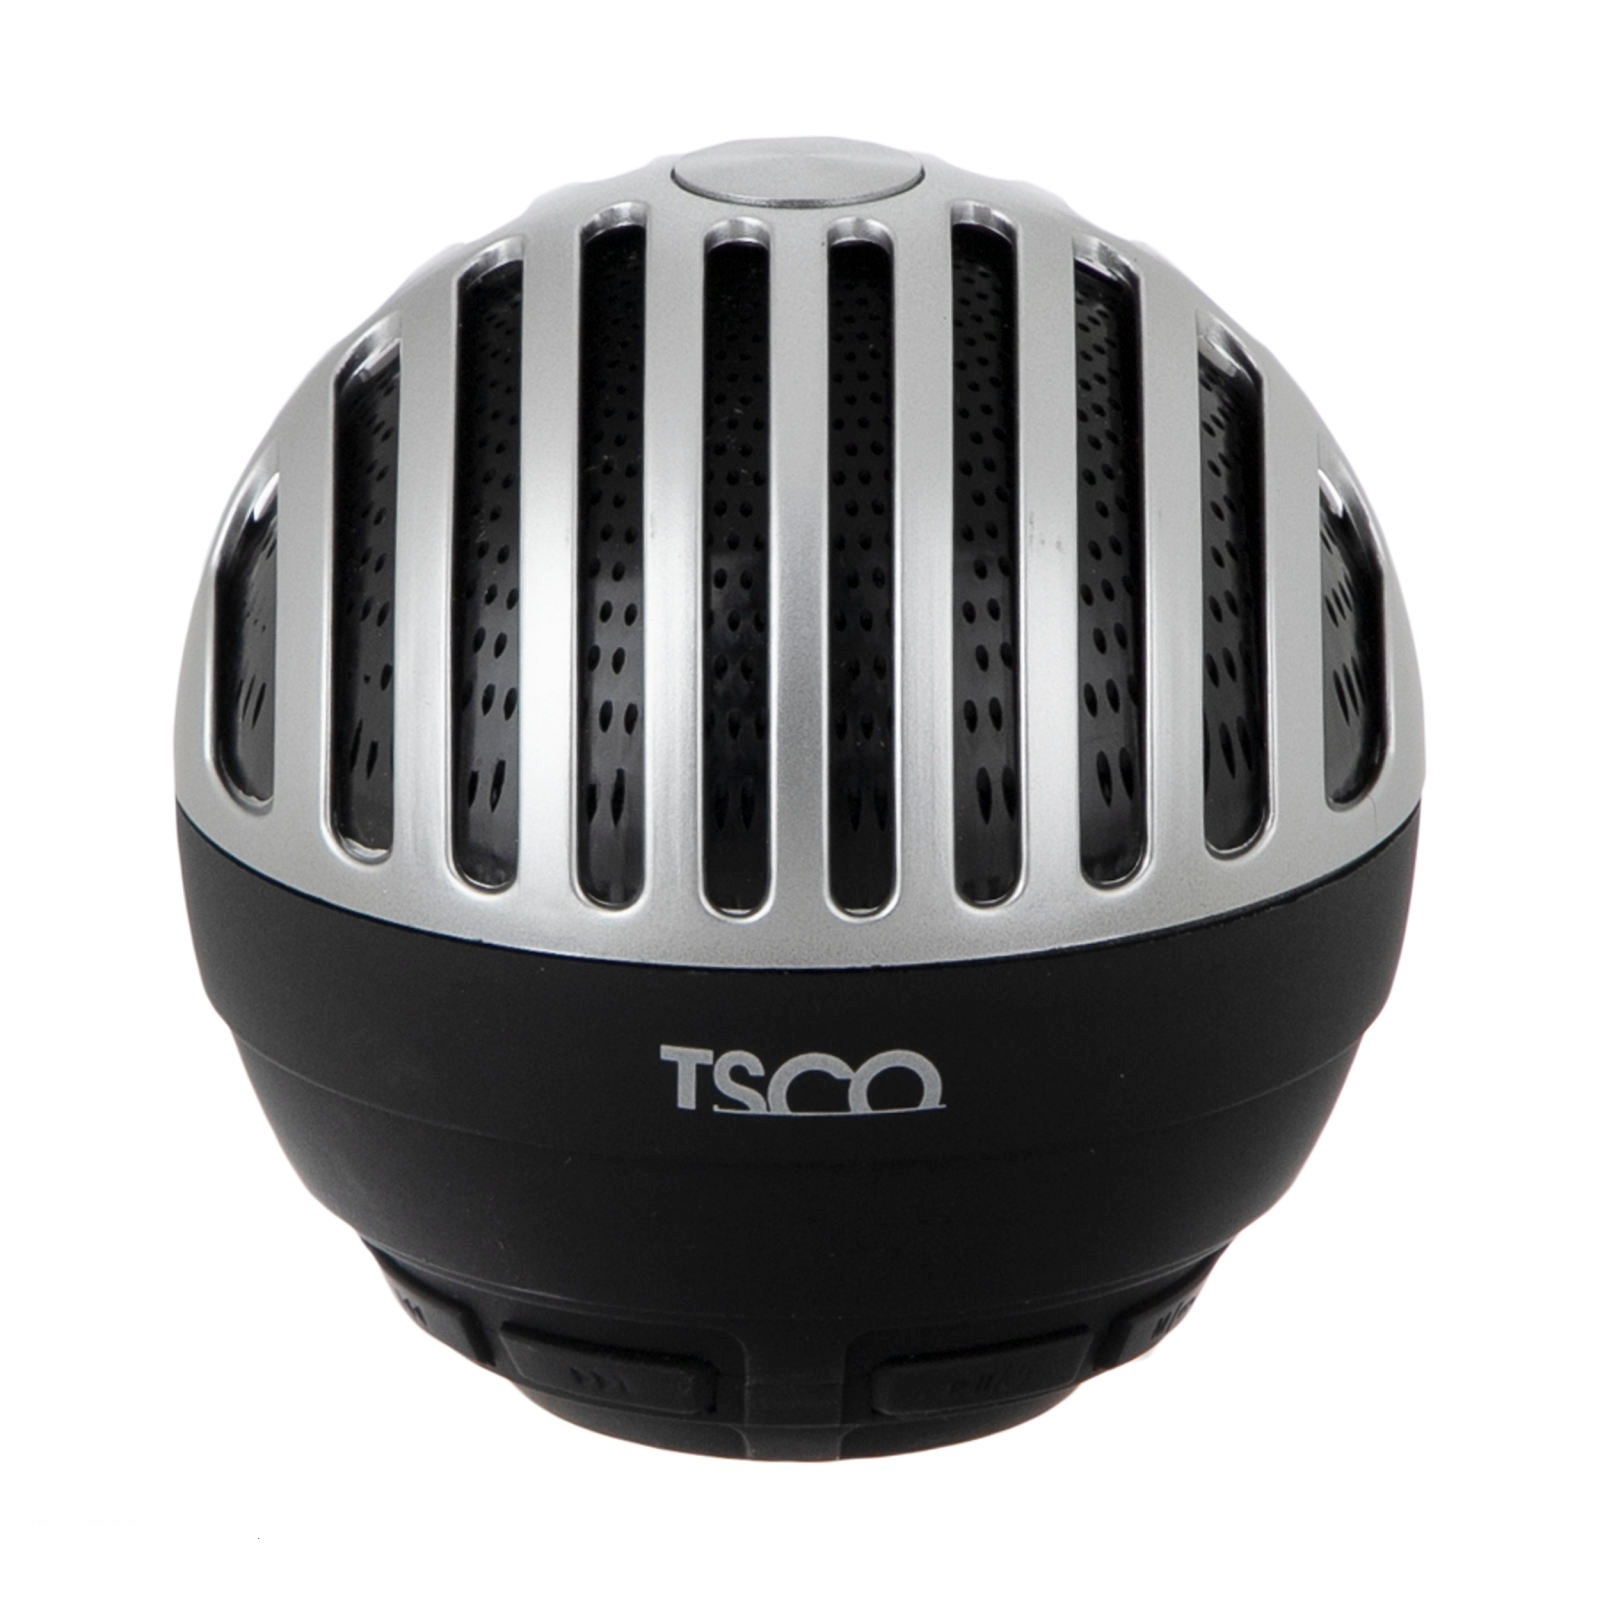 اسپیکر تسکو TSCO TS 2329 Bluetooth Speaker